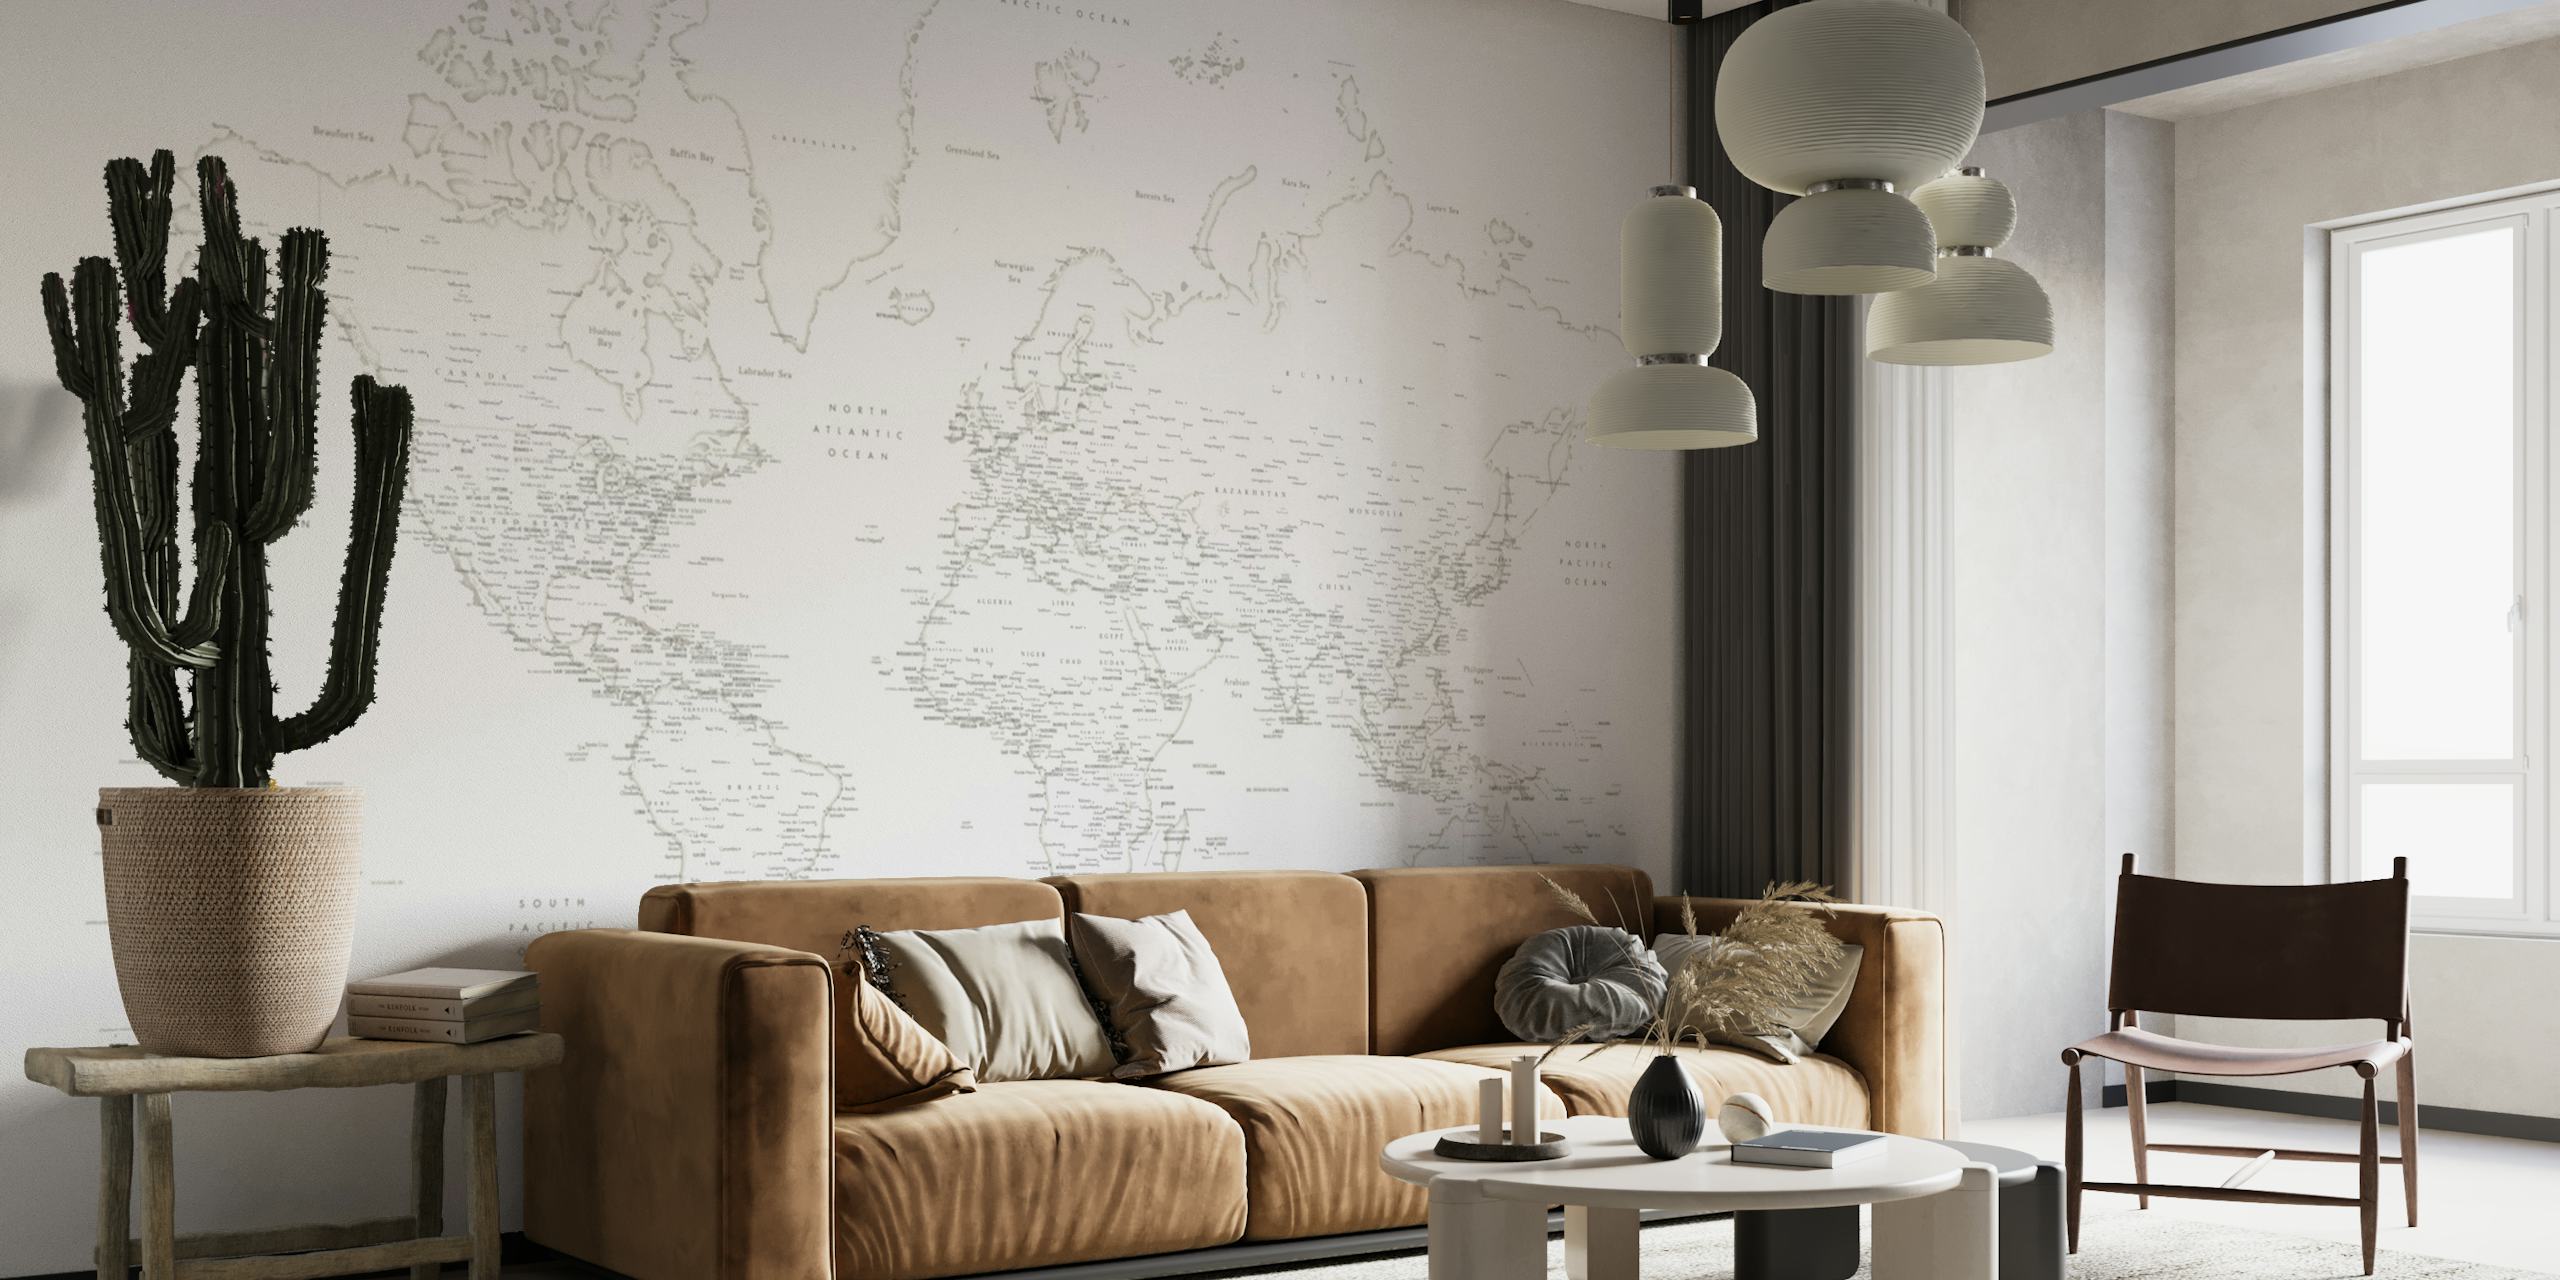 Nálepka na stěnu s podrobnou mapou světa Maeli W s komplikovanou linií